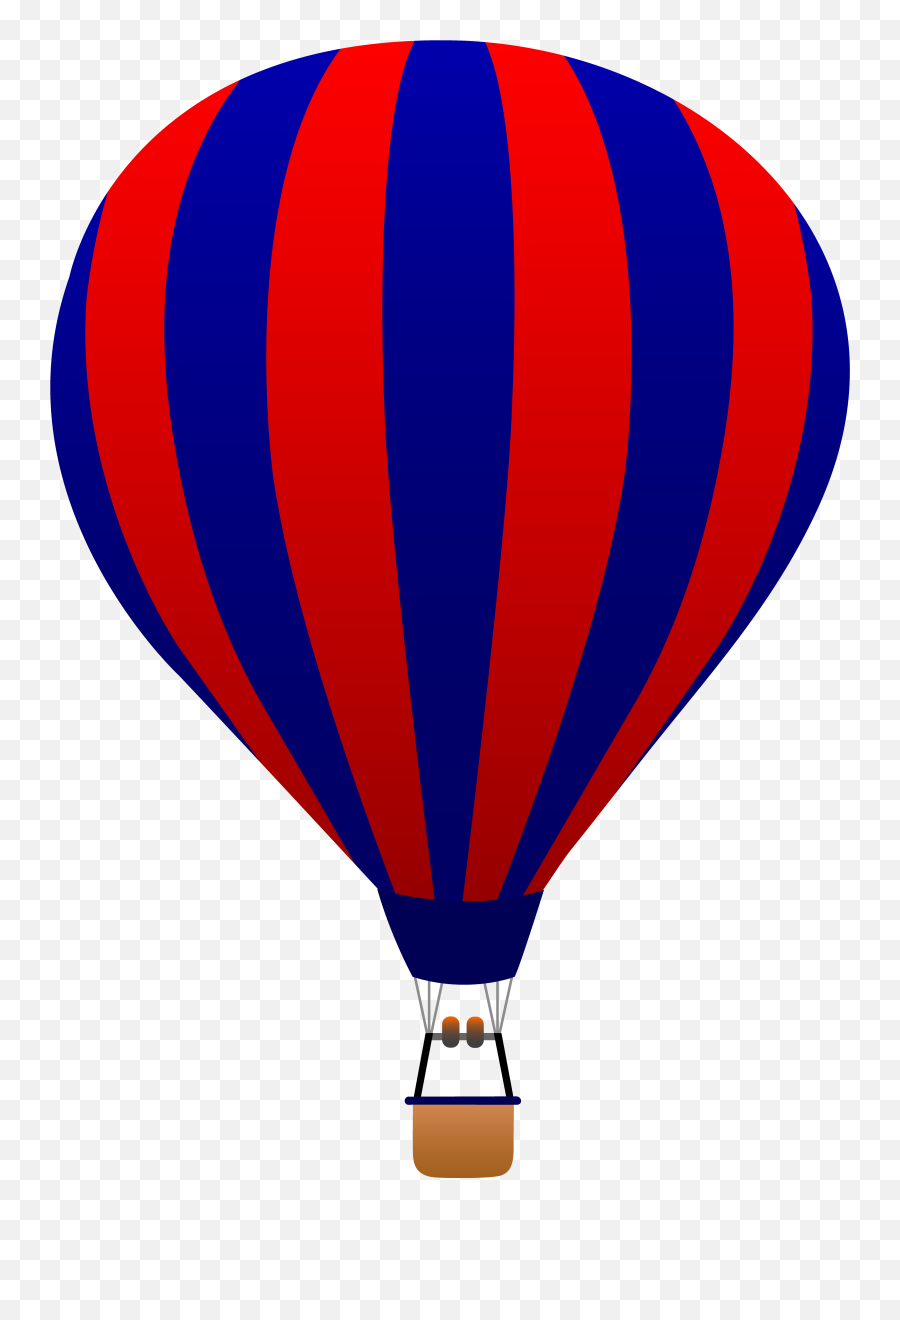 Hot Air Balloon Transparent Background - Hot Air Balloon Clip Art Png,Hot Air Balloon Transparent